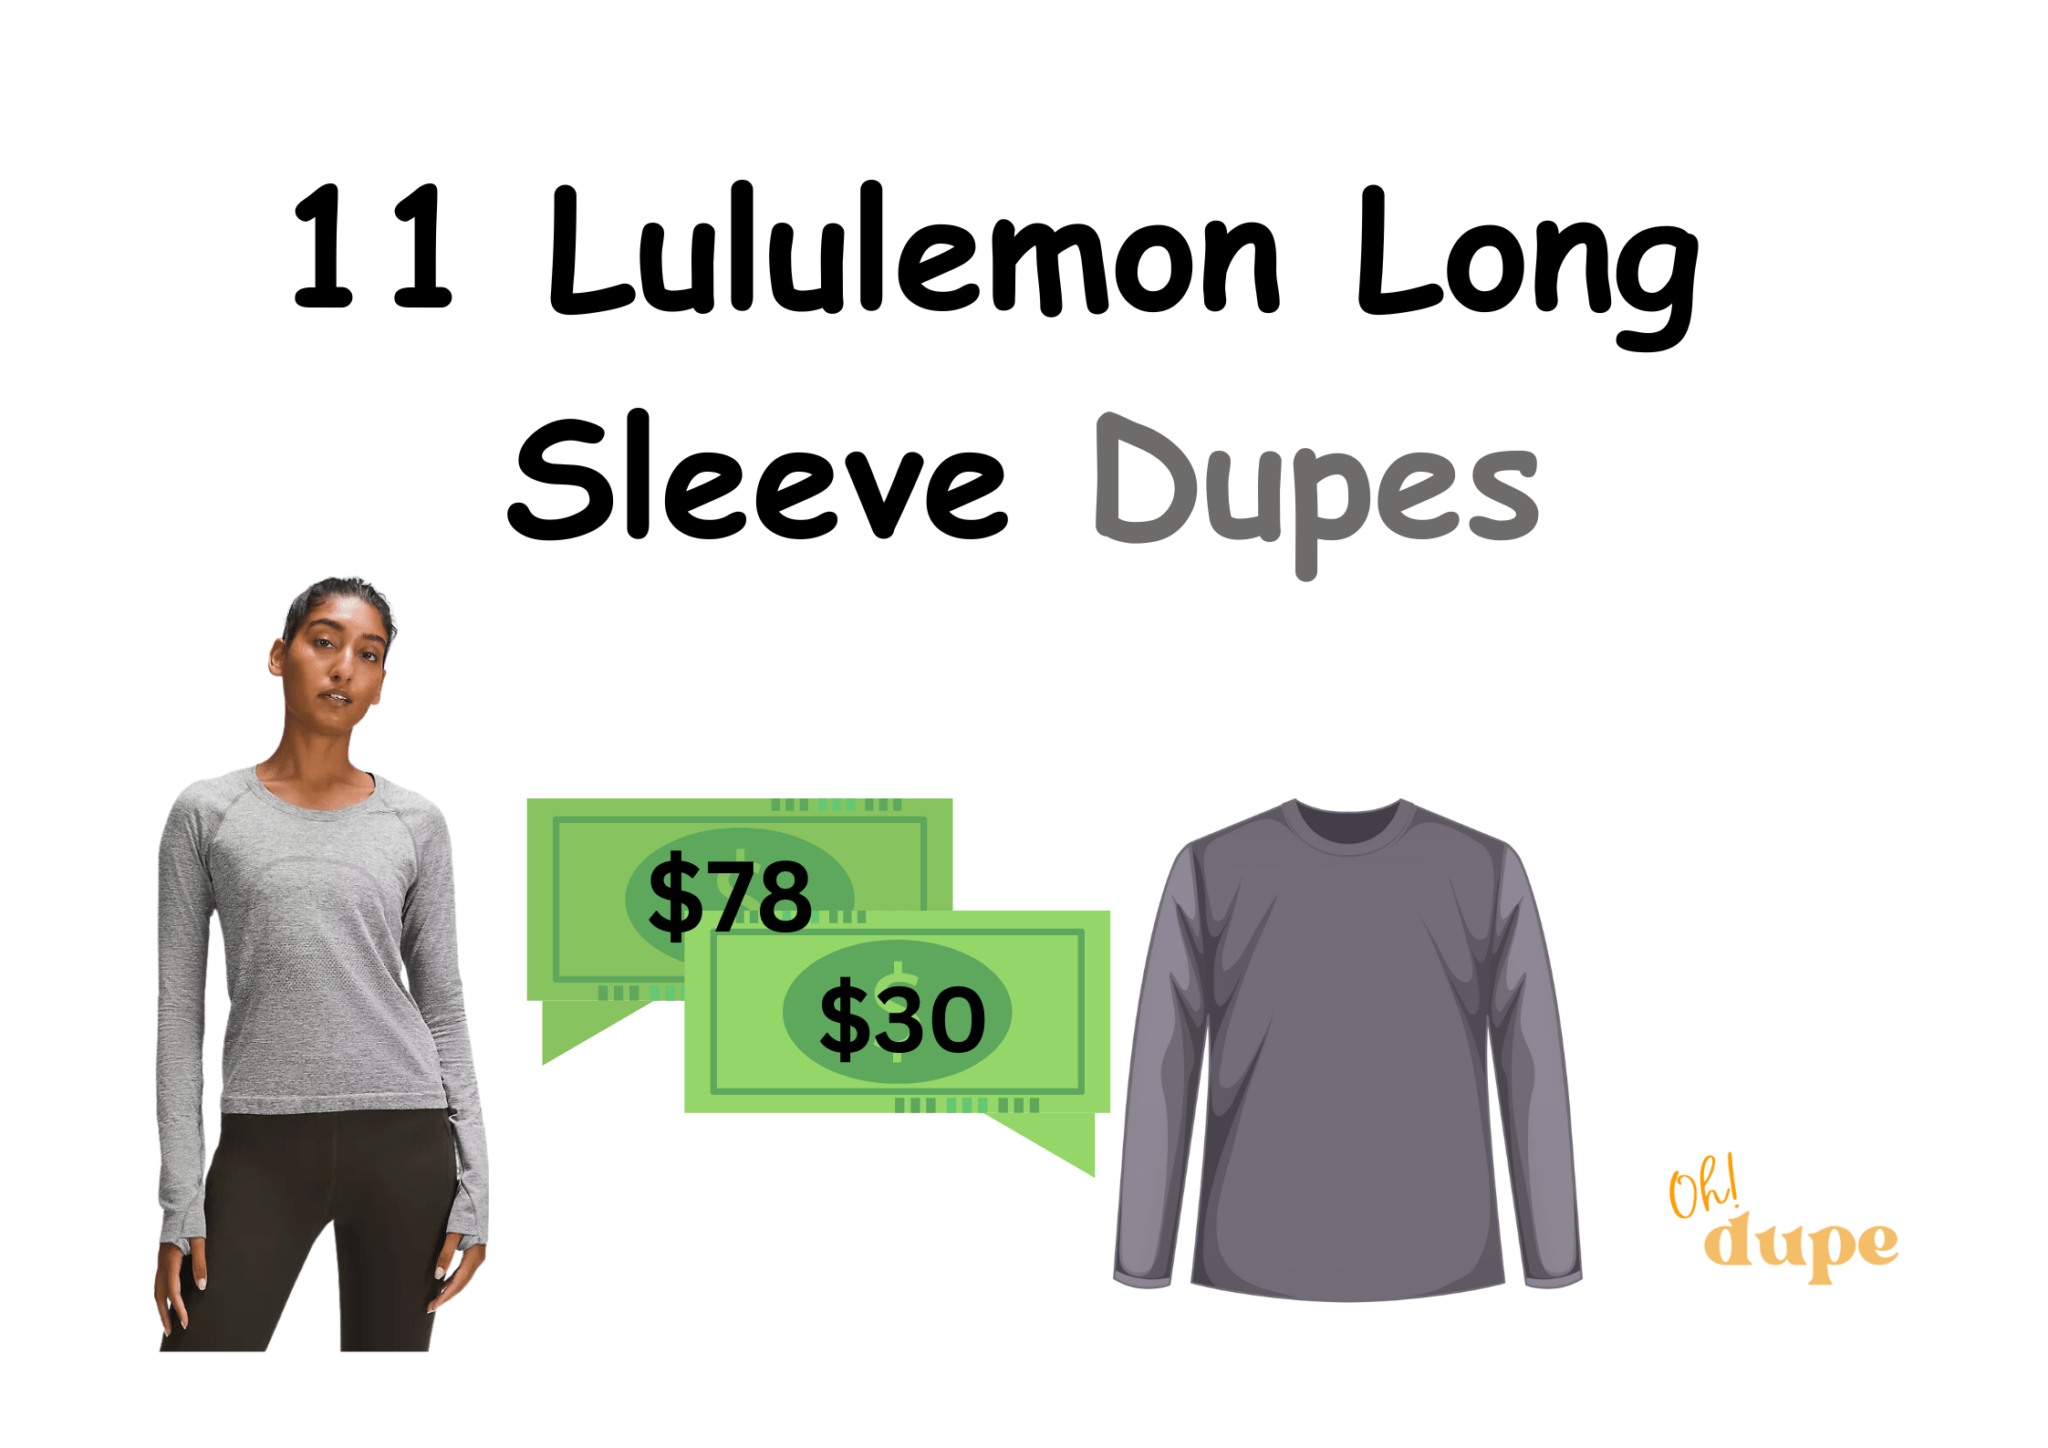 Lululemon Long Sleeve Dupe 2048x1448 